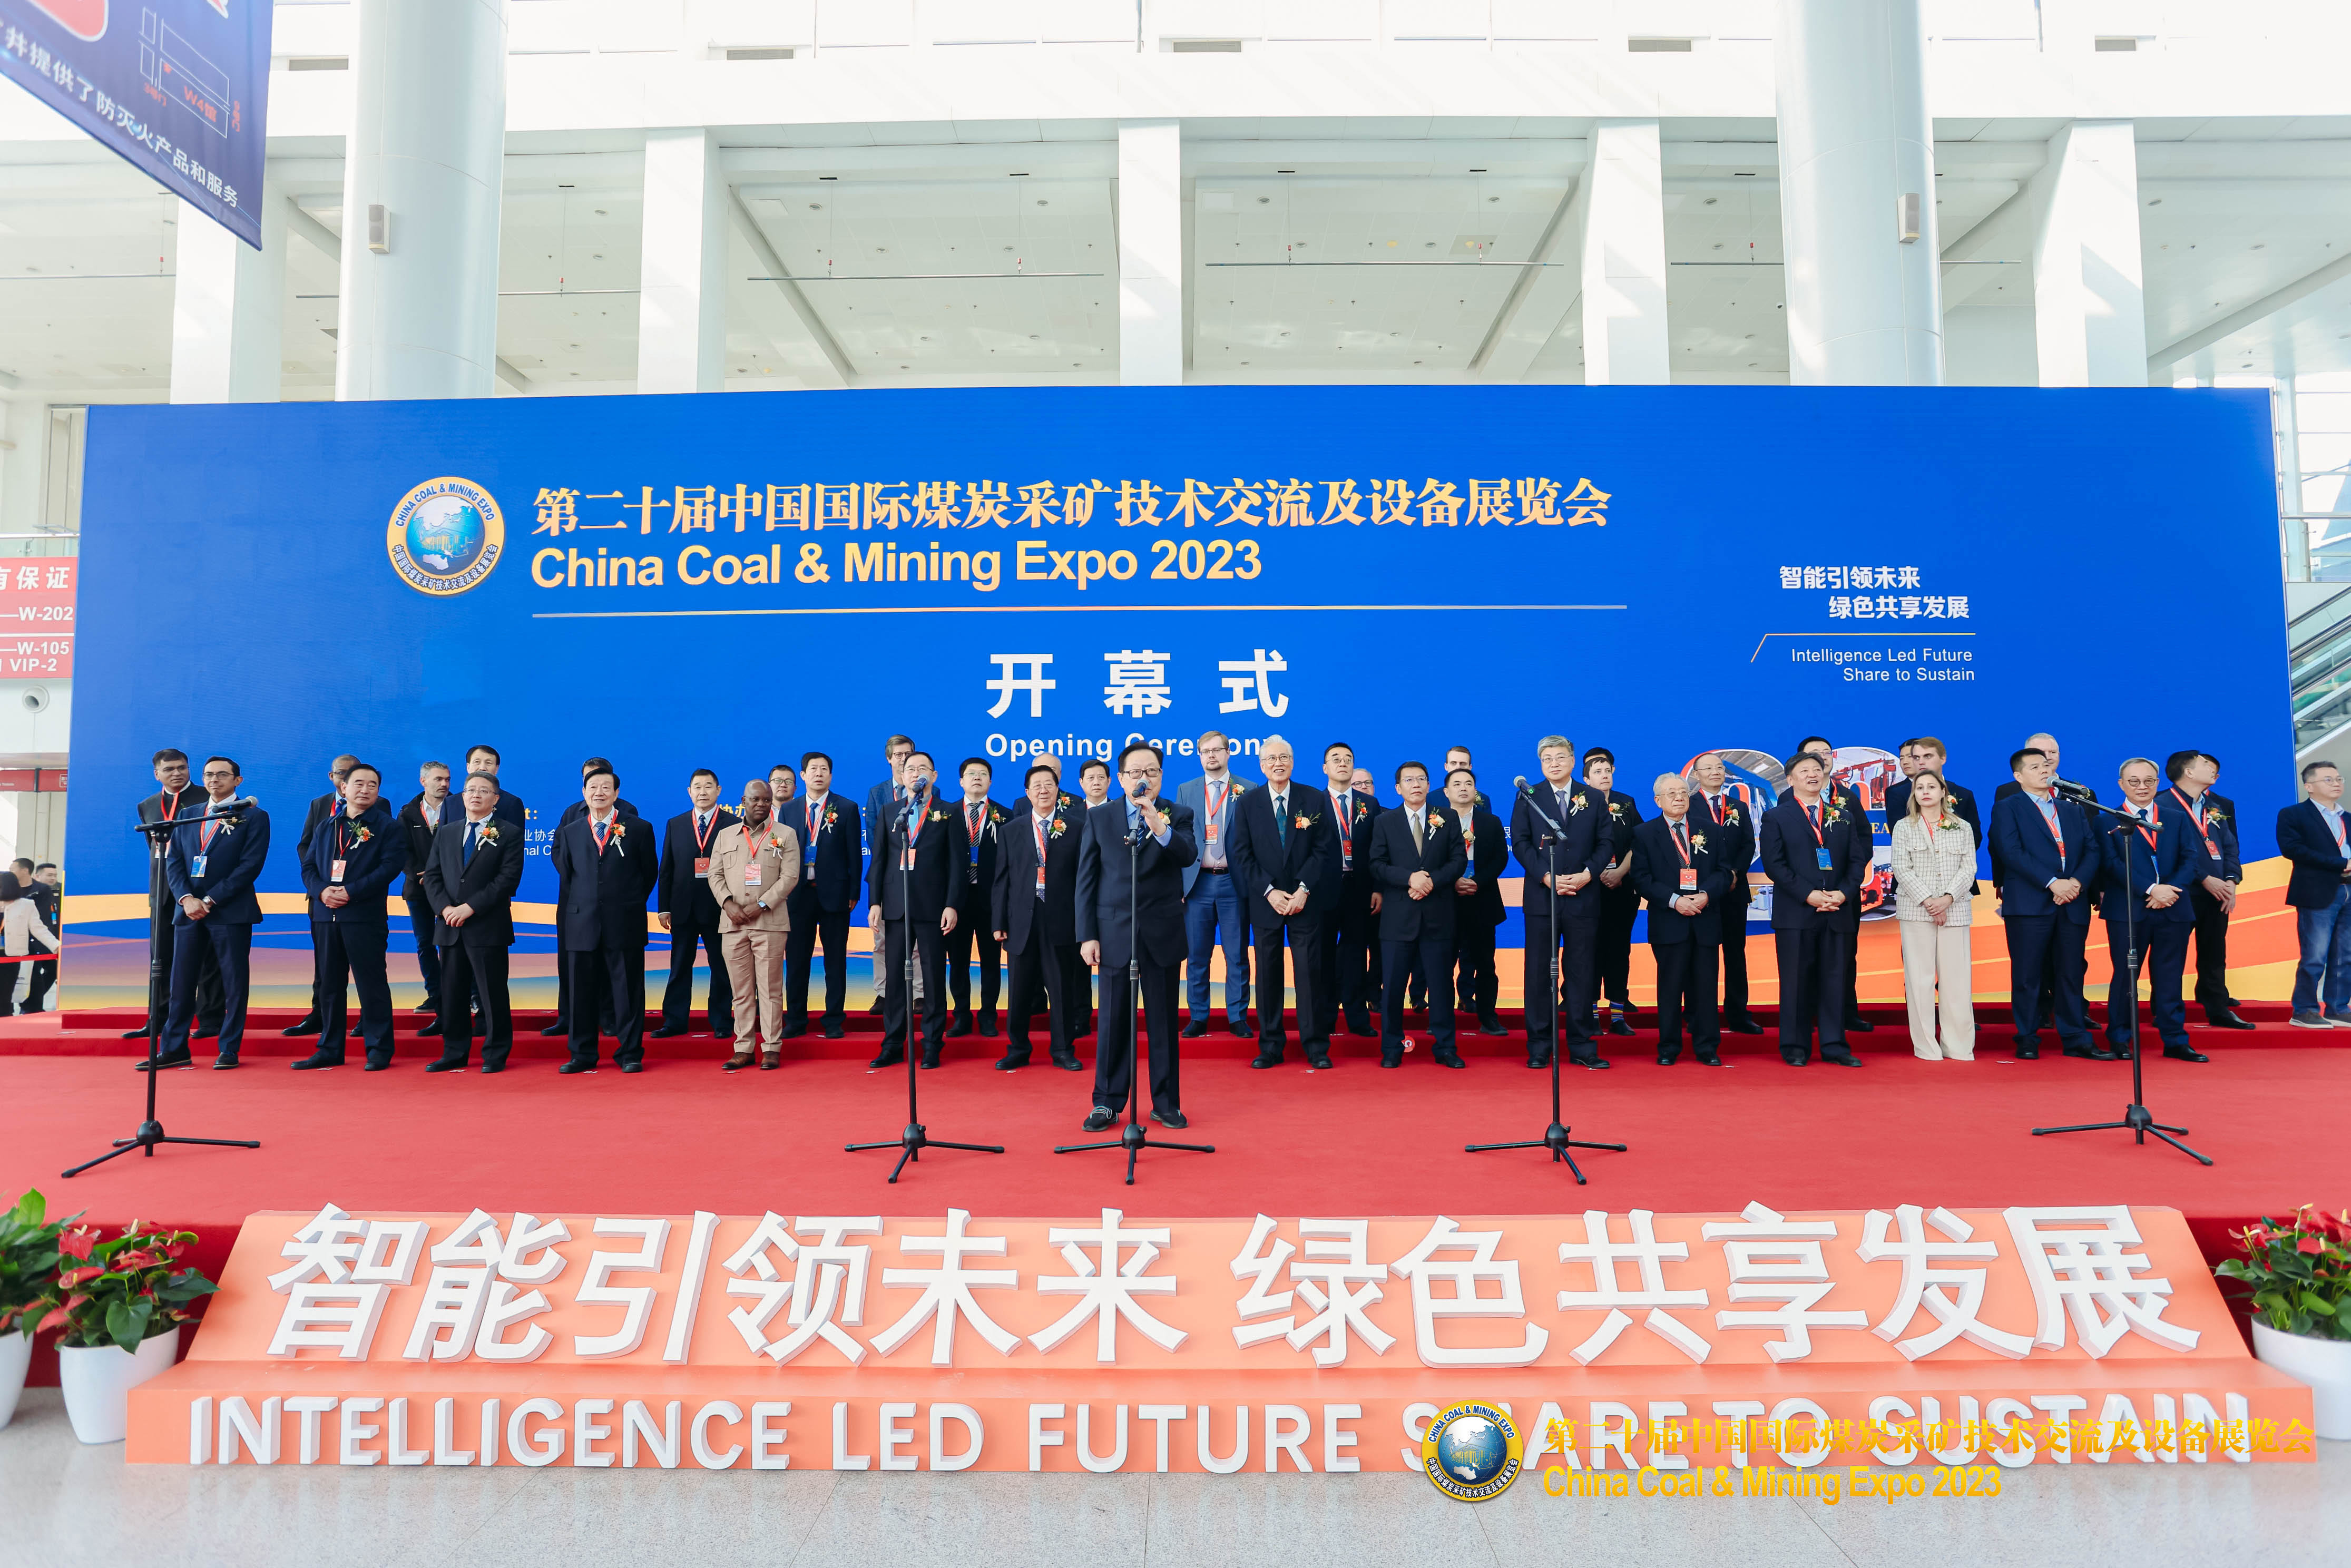 山东昕能智能科技集团有限公司参加第二十届中国国际煤炭采矿技术交流及设备展览会